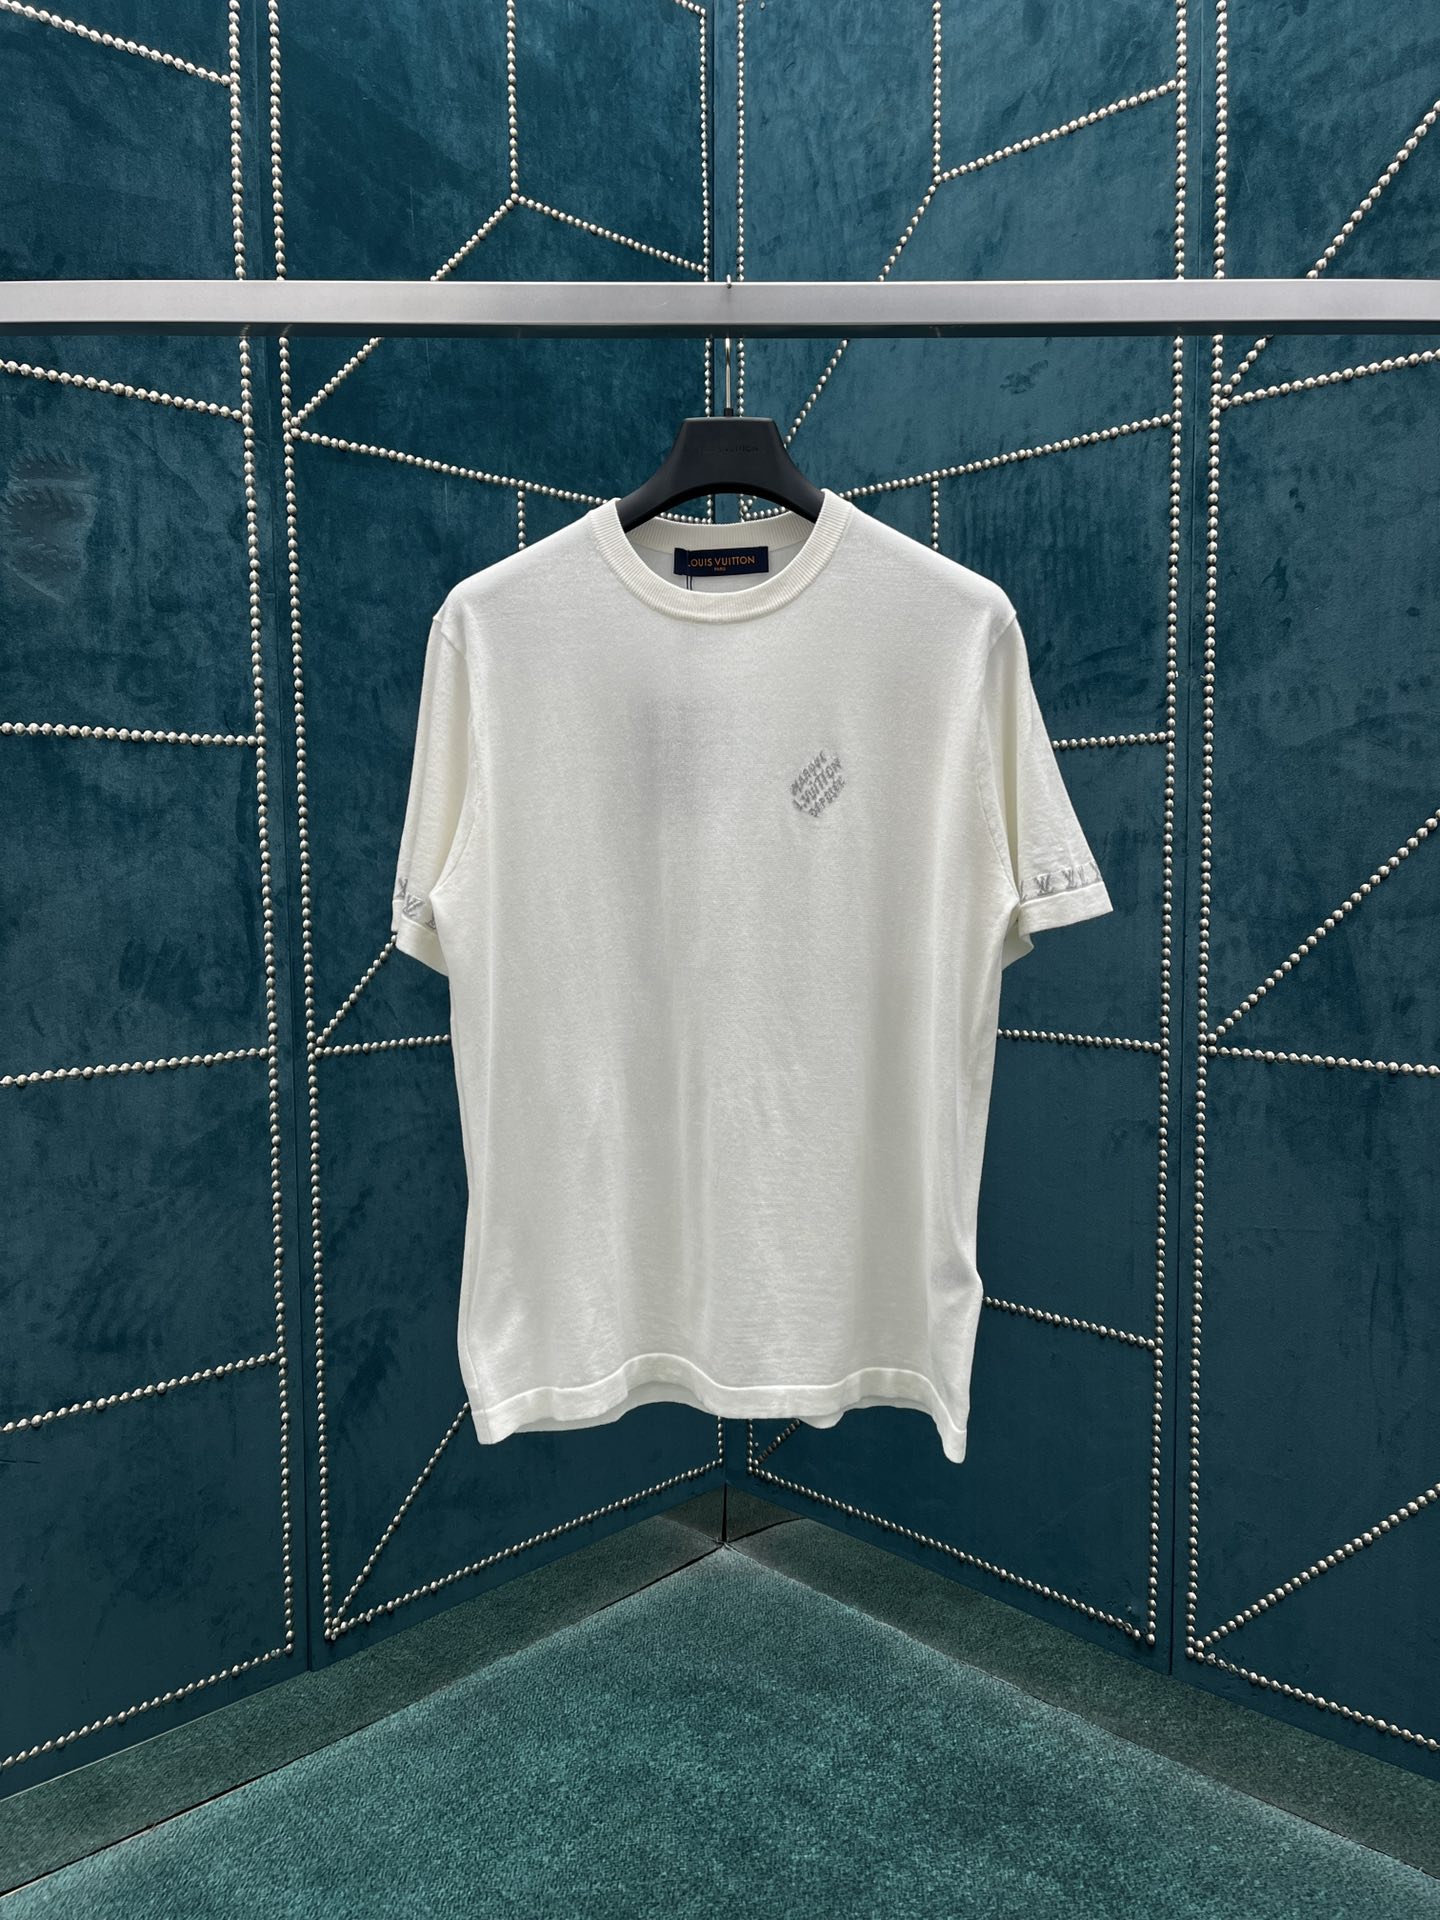 Louis Vuitton Vêtements T-Shirt Unisexe Coton Tricot Collection printemps – été Manches courtes